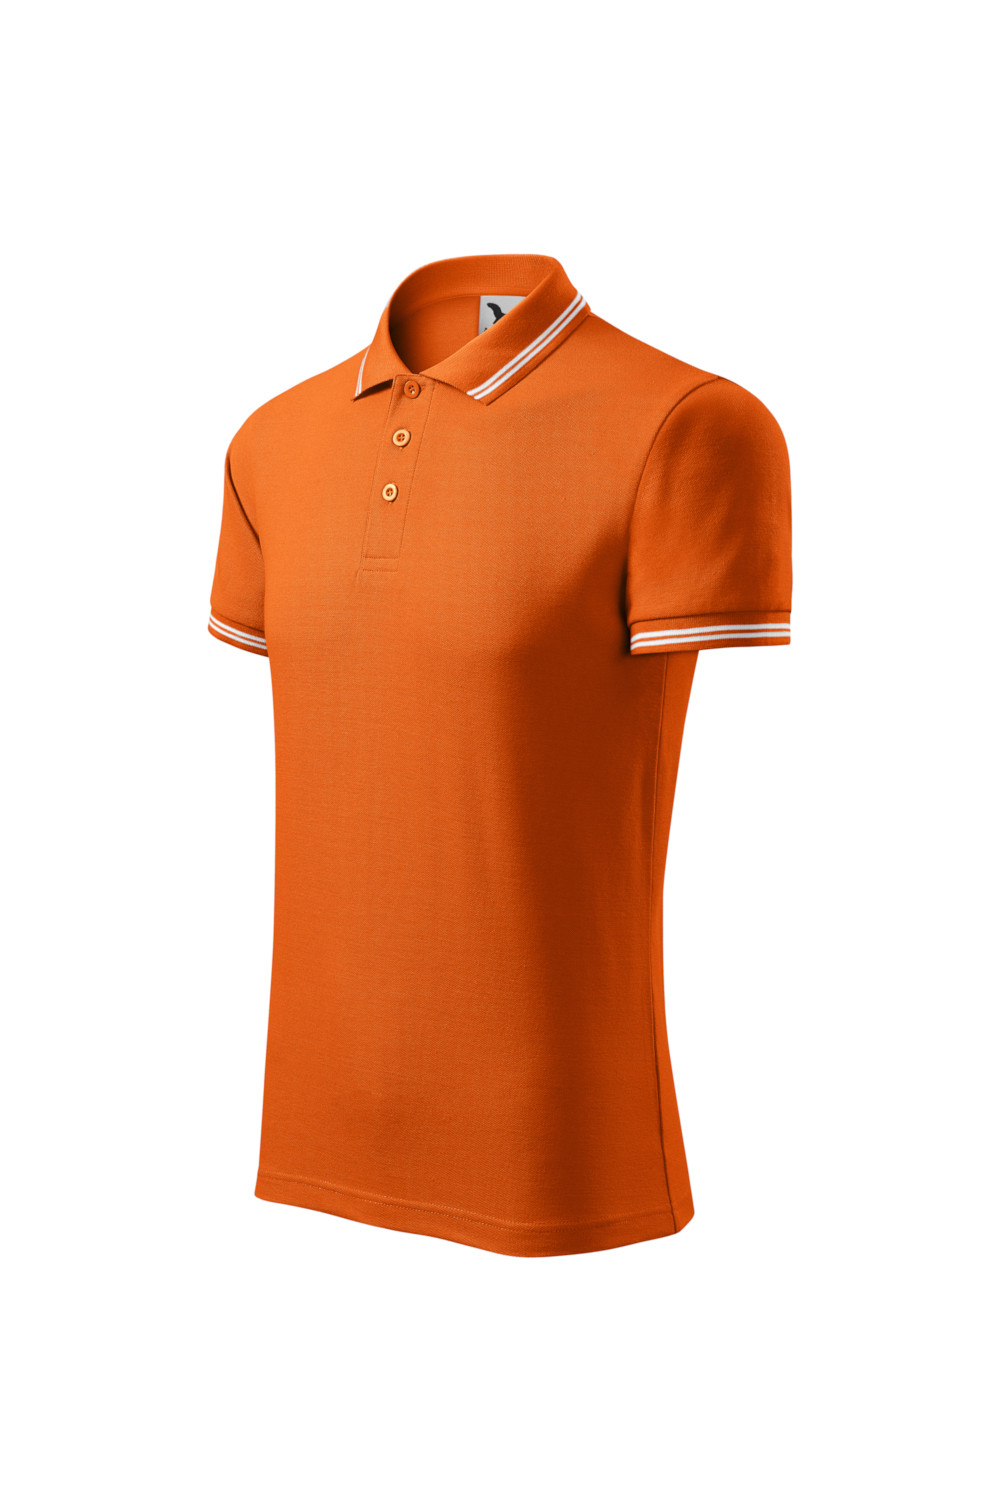 Koszulka Polo męska 65% bawełna 35% poliester pomarańczowy URBAN 219 polo